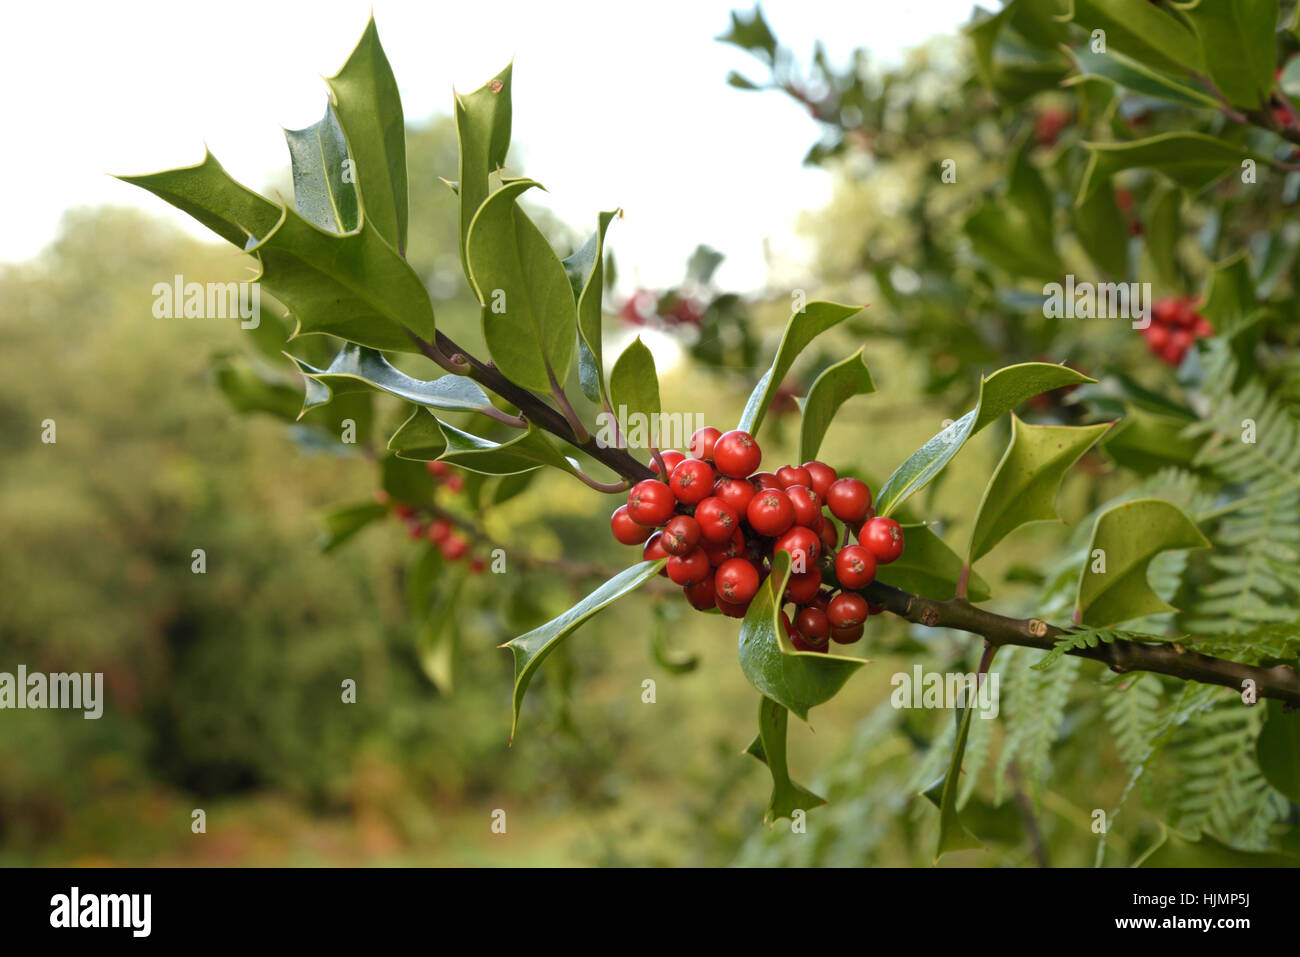 Holly, Ilex aquifolium Berries Stock Photo